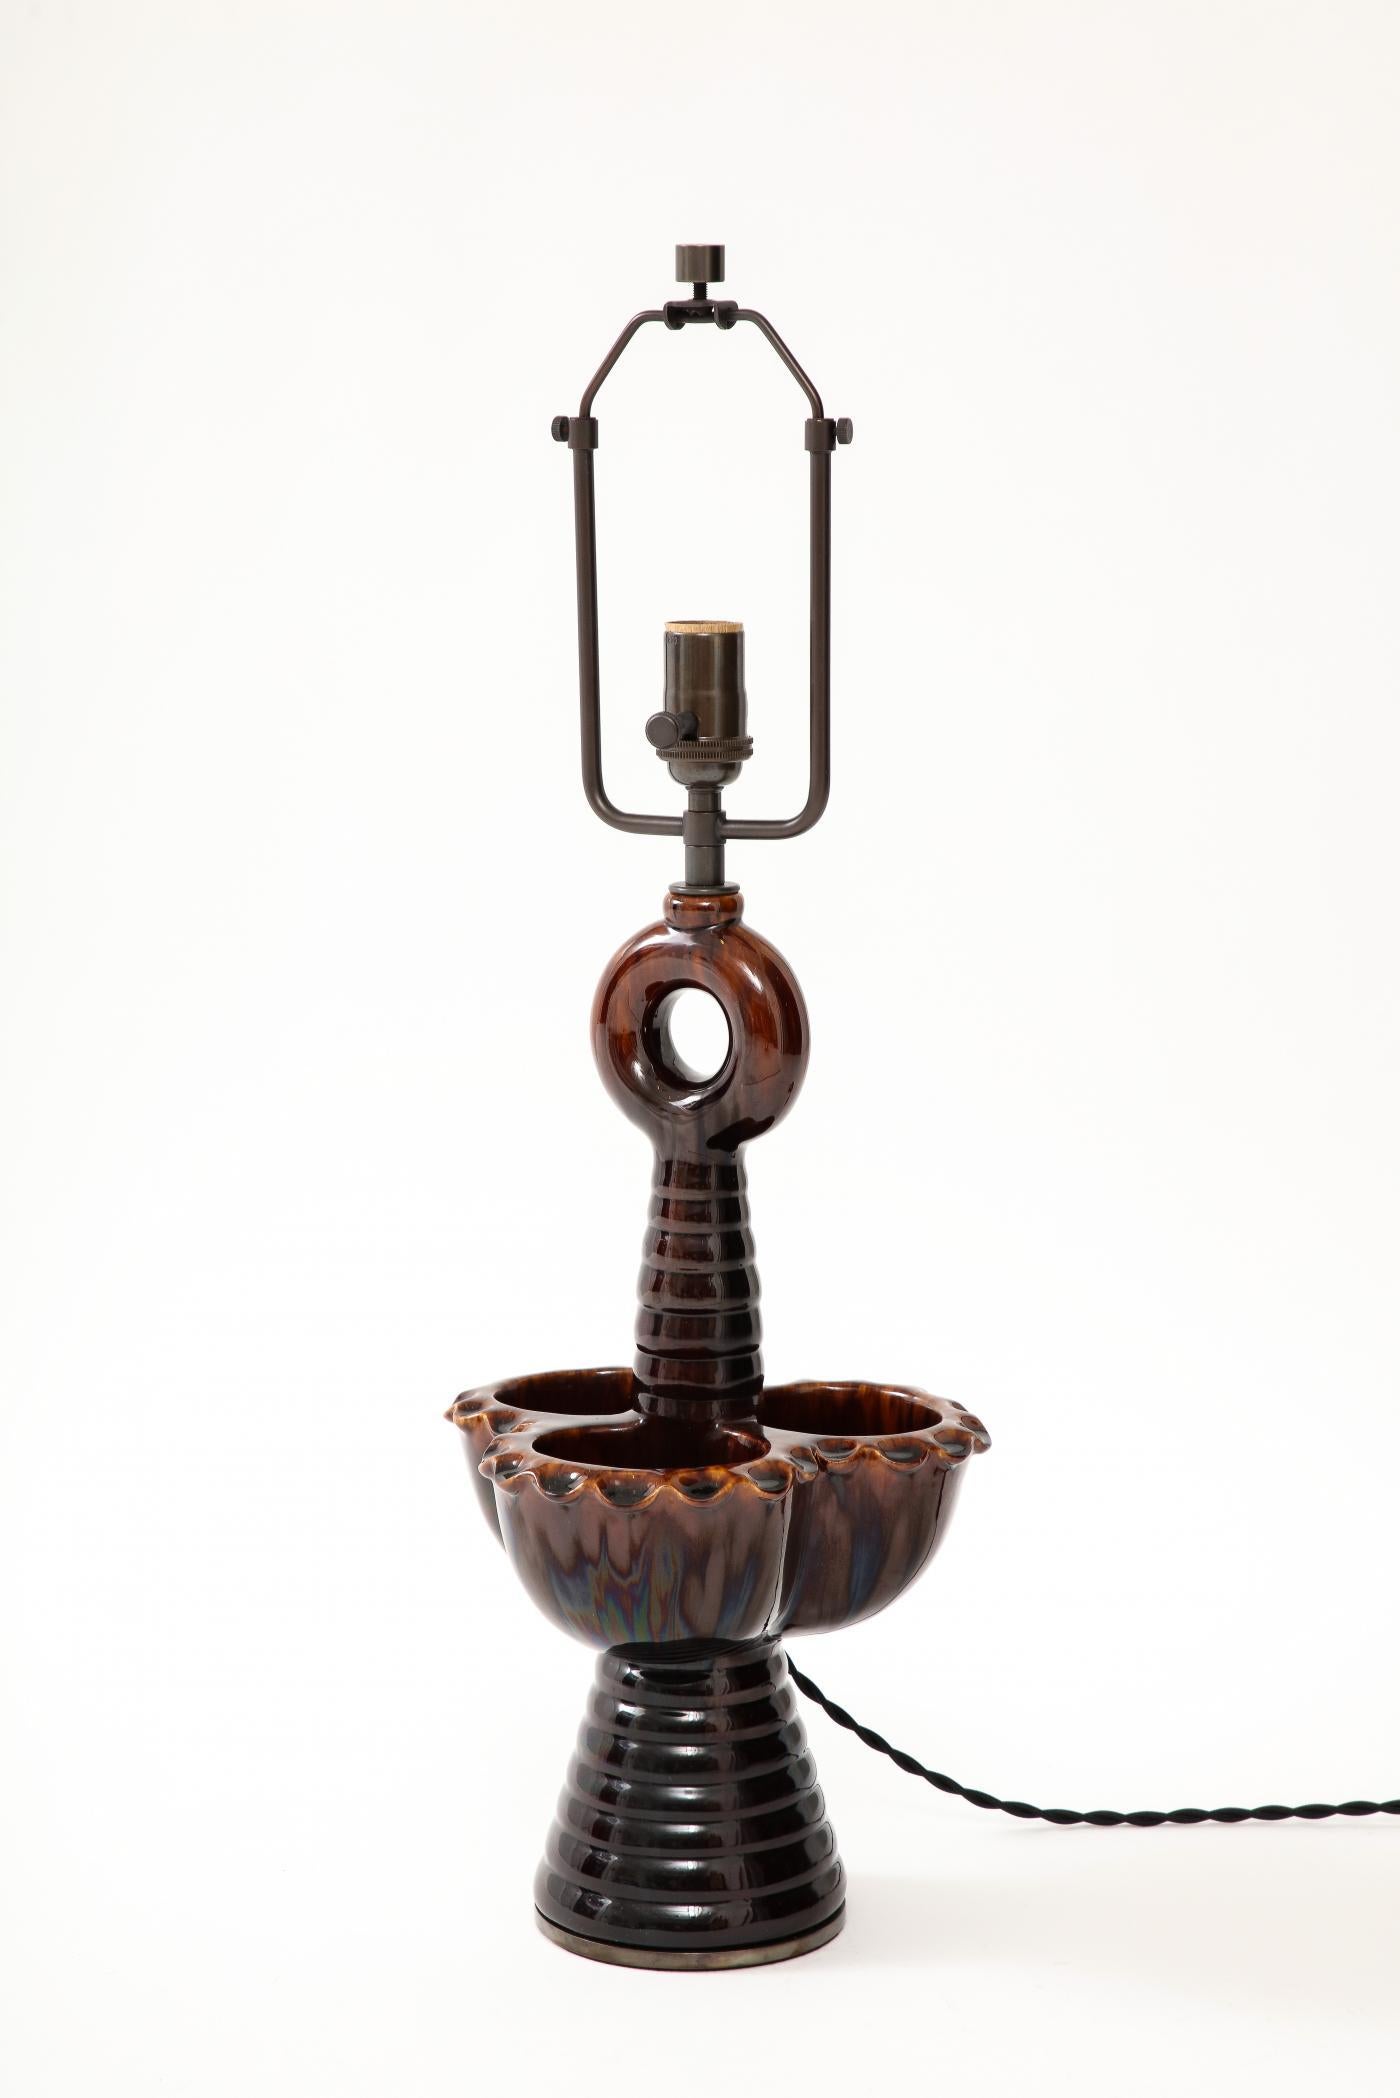 Lampe de table en céramique du sculpteur français Louis Giraud, d'un aspect très unique. Les trois gobelets qui constituent le périmètre peuvent servir d'attrape-nigauds.

